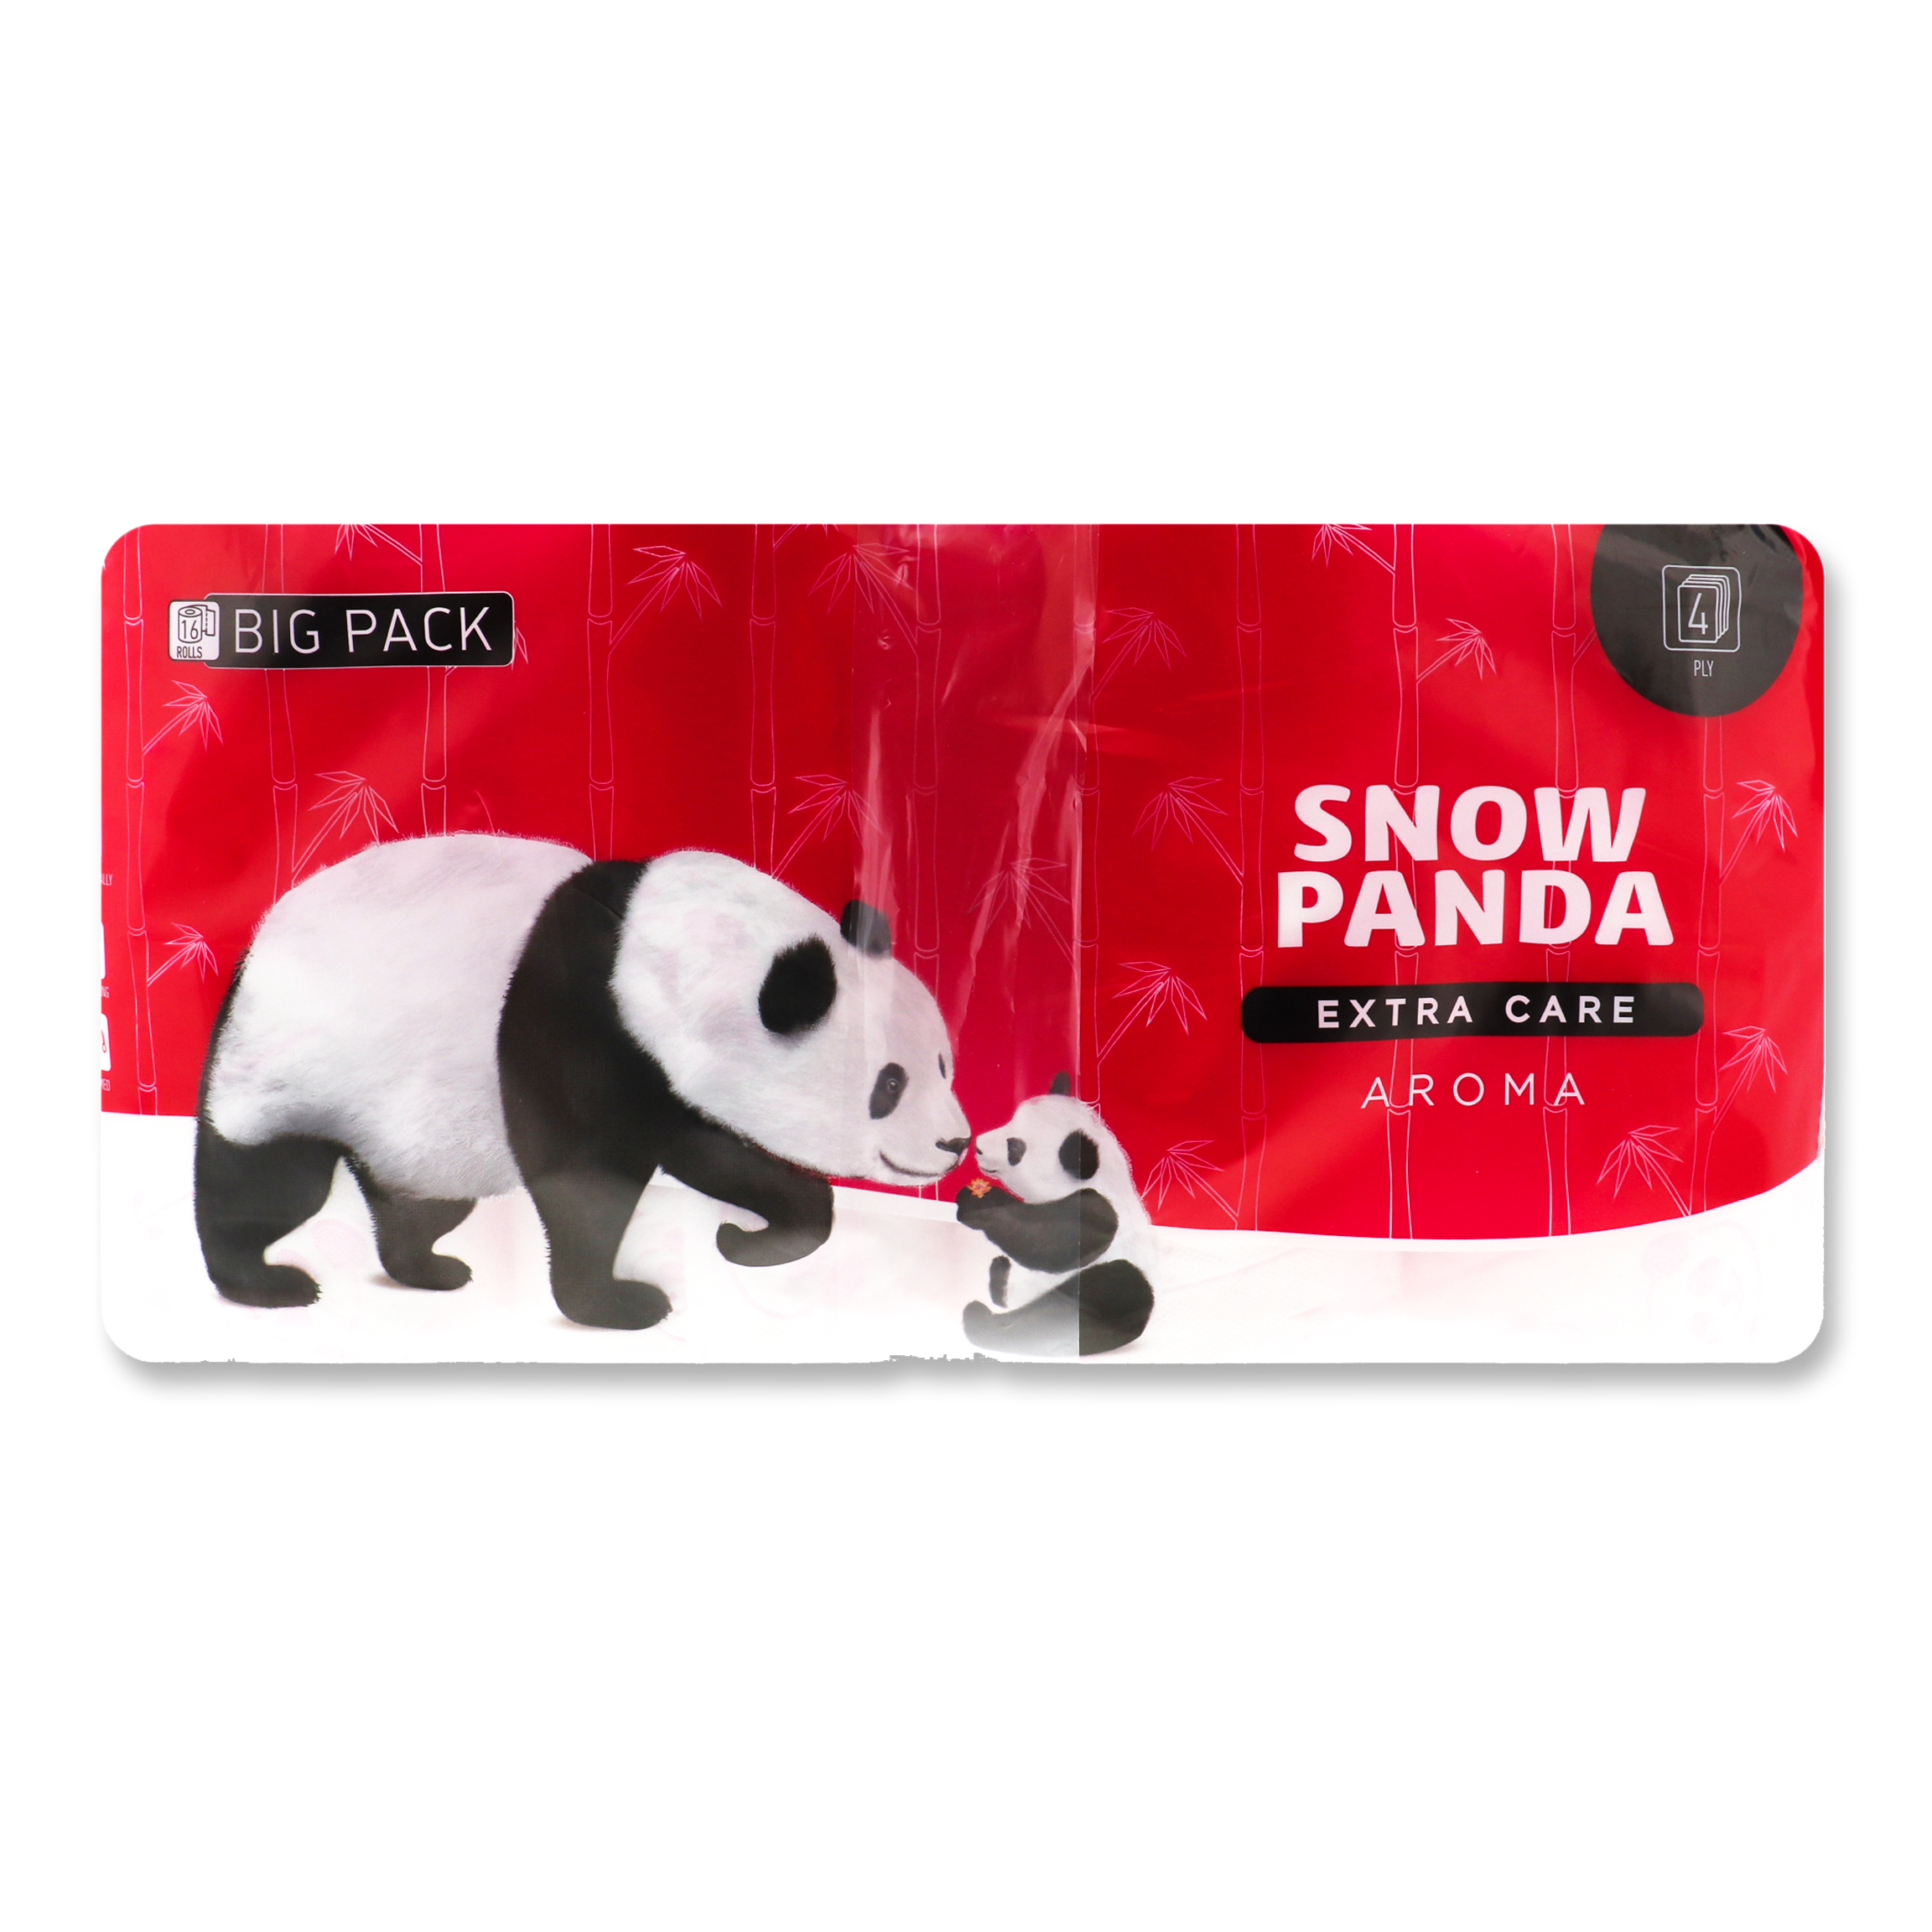 Туалетная бумага Снежная панда Extra care Aroma четырехслойная 16шт